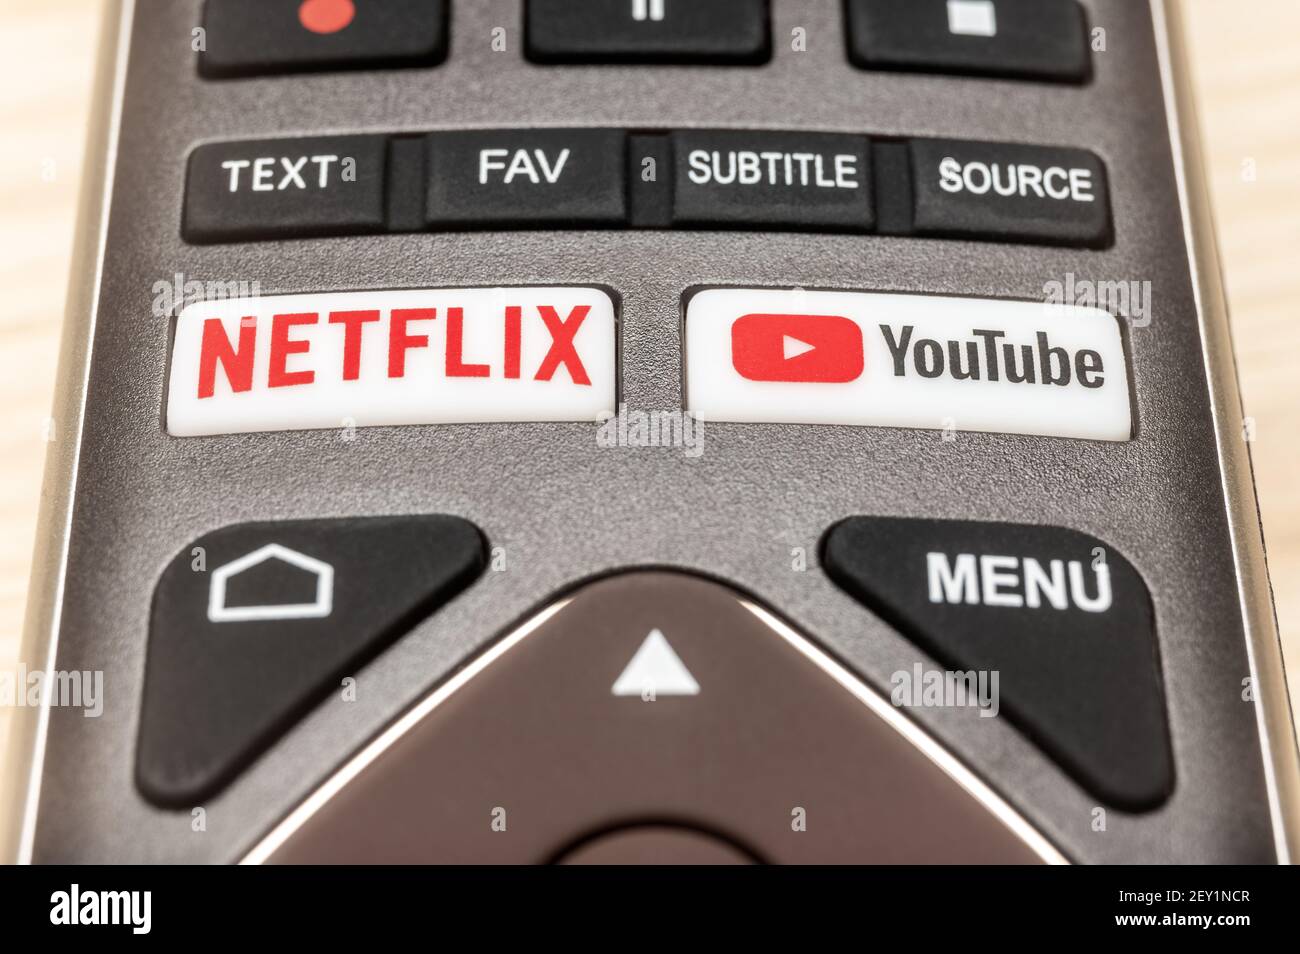 MOSCÚ,RUSIA - 6 MAR, 2021: YouTube y botones Netflix en el mando a distancia. Botones Netflix y YouTube del mando a distancia. Android TV en casa. Smart TV remot Foto de stock